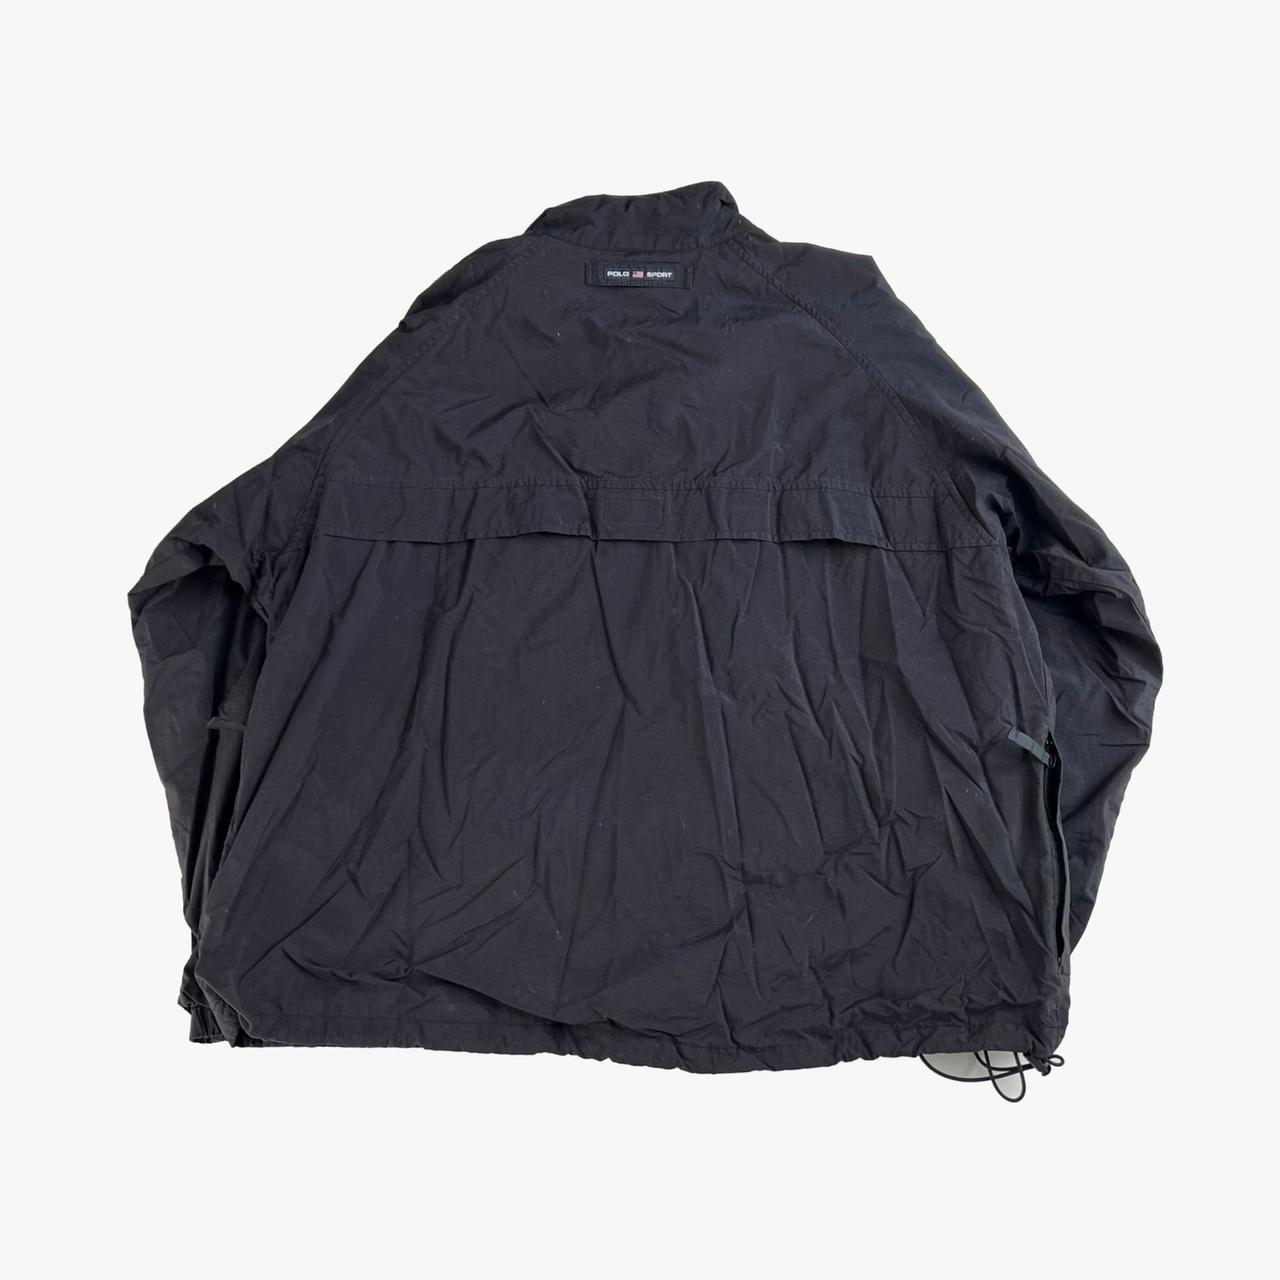 Vintage 90’s Polo Sport jacket. Size XXL. Item is in - Depop